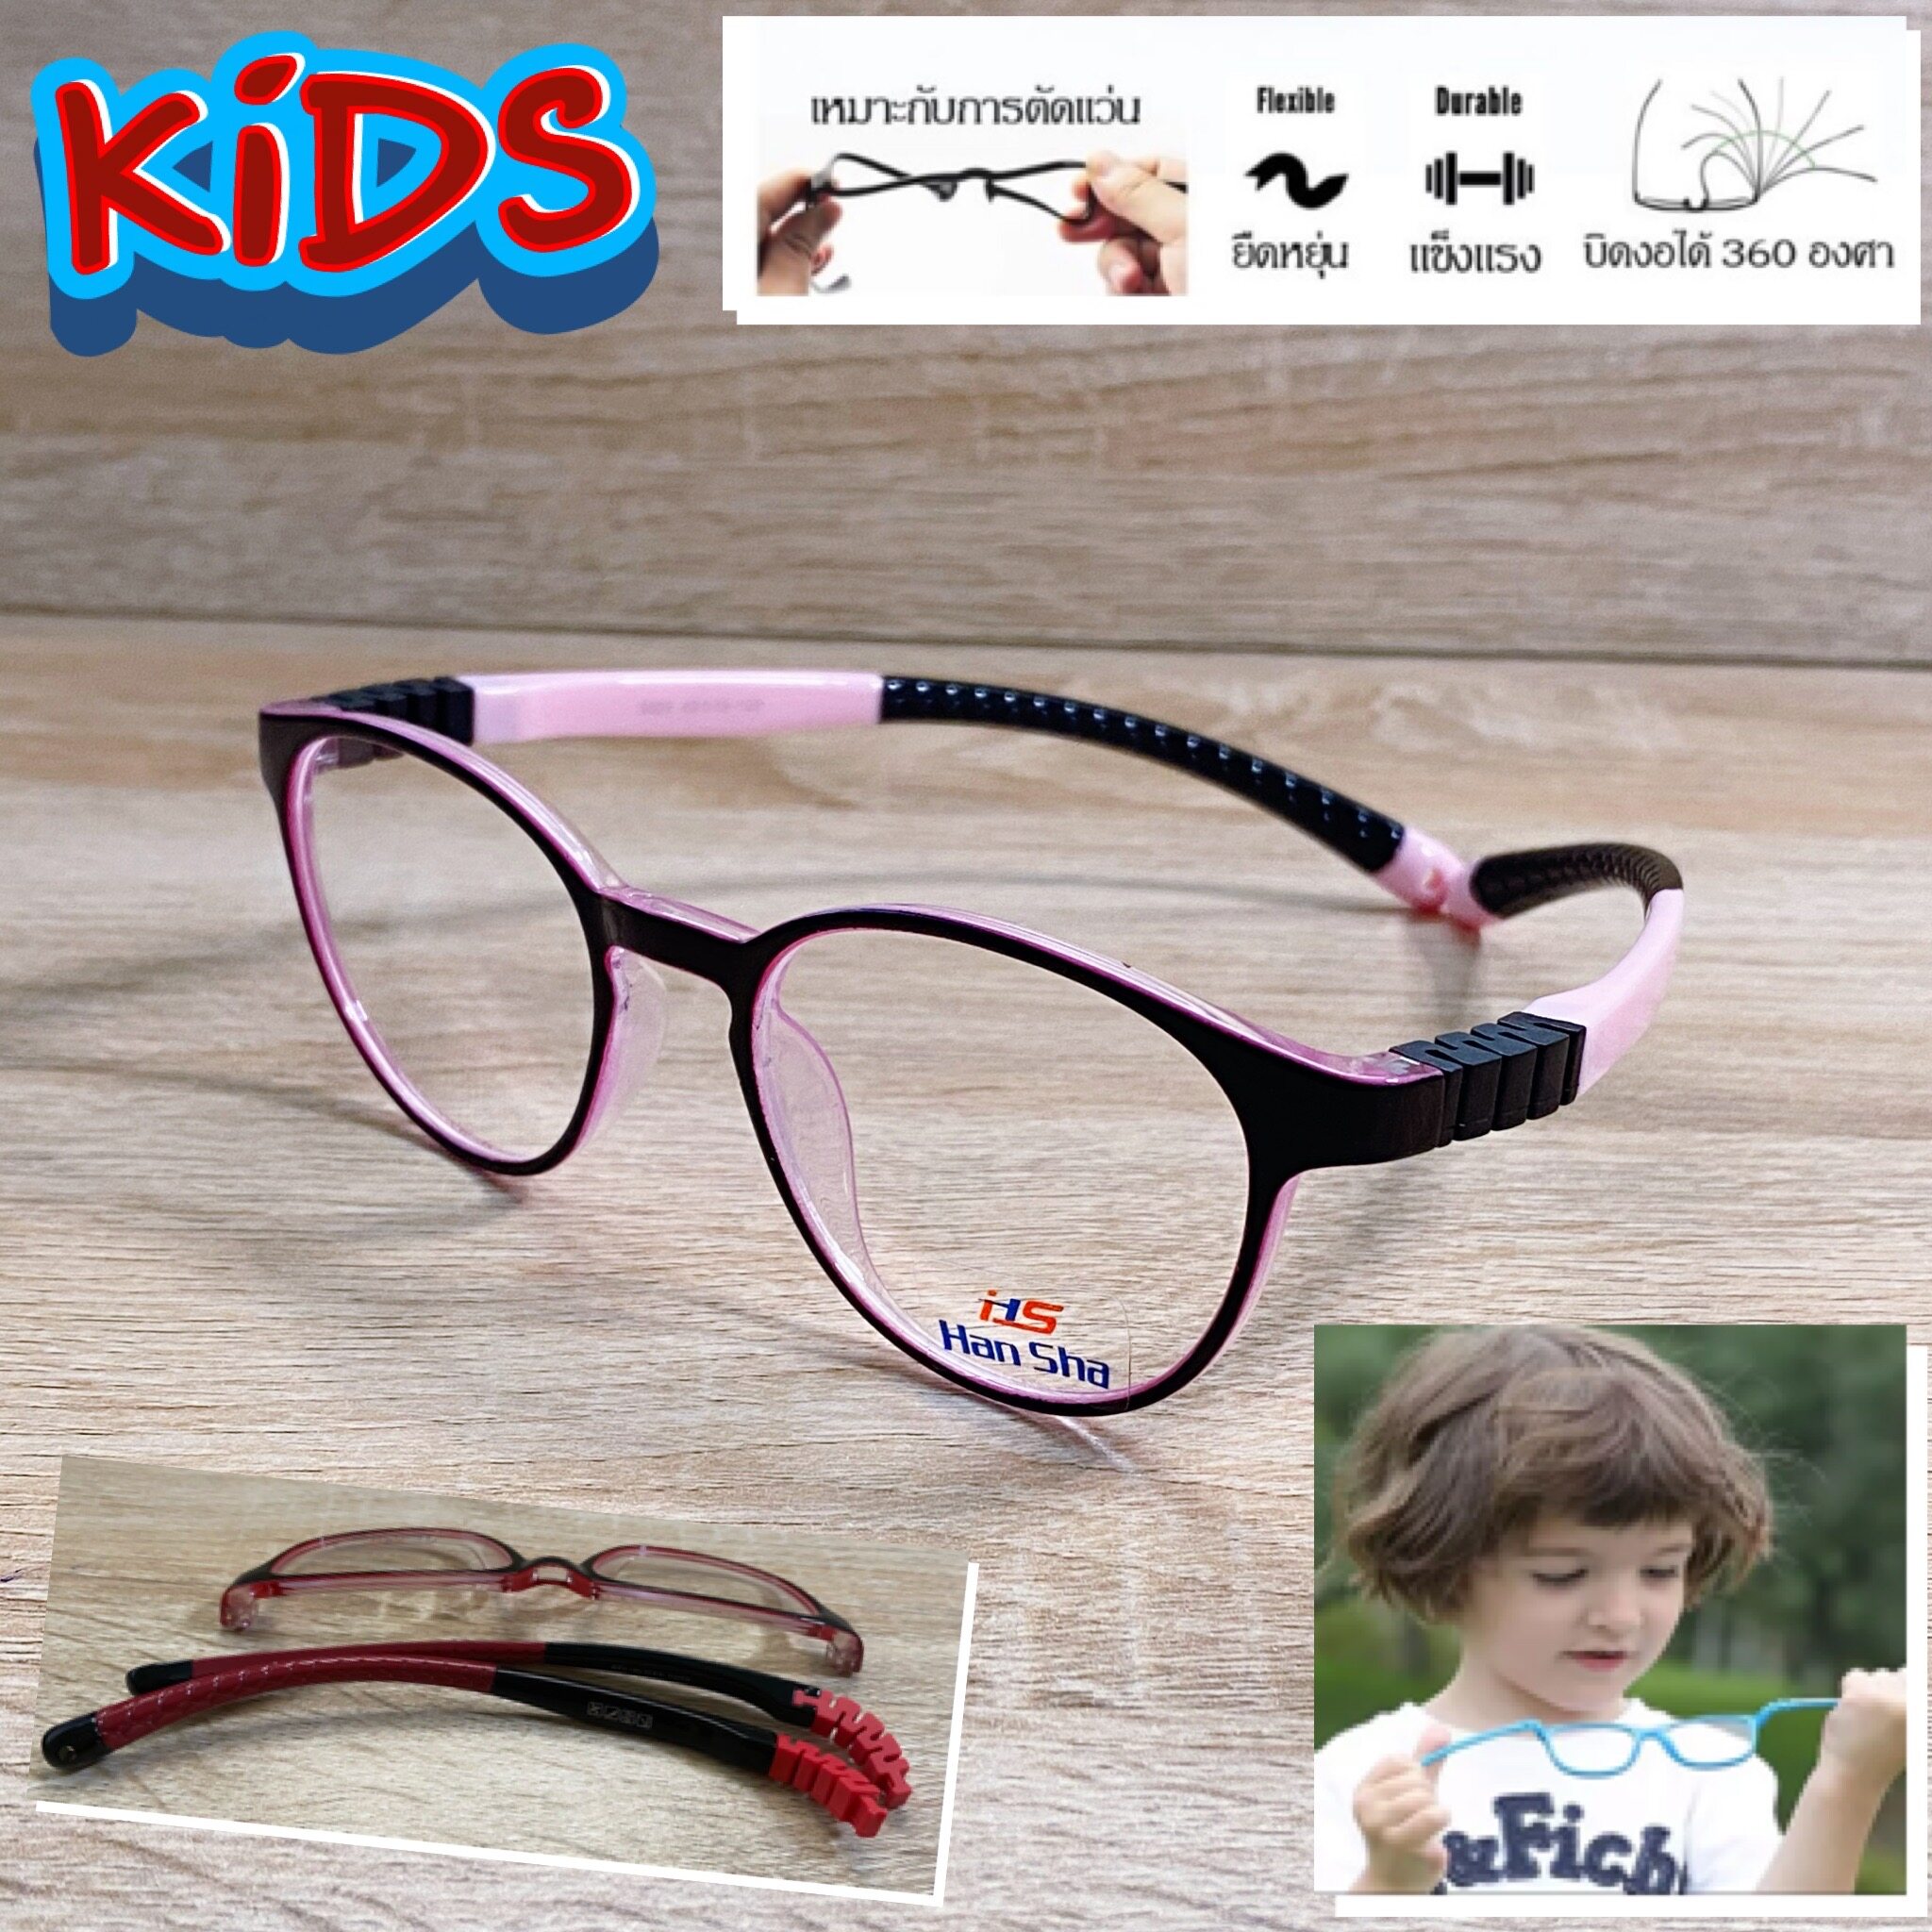 แว่นตาเด็ก กรอบแว่นตาเด็ก สำหรับตัดเลนส์ แว่นตา Han Sha รุ่น 5002 สีดำตัดชม ขาไม่ใช้น็อต ยืดหยุ่น ถอดขาเปลี่ยนได้ วัสดุ TR 90 เบา ไม่แตกหัก